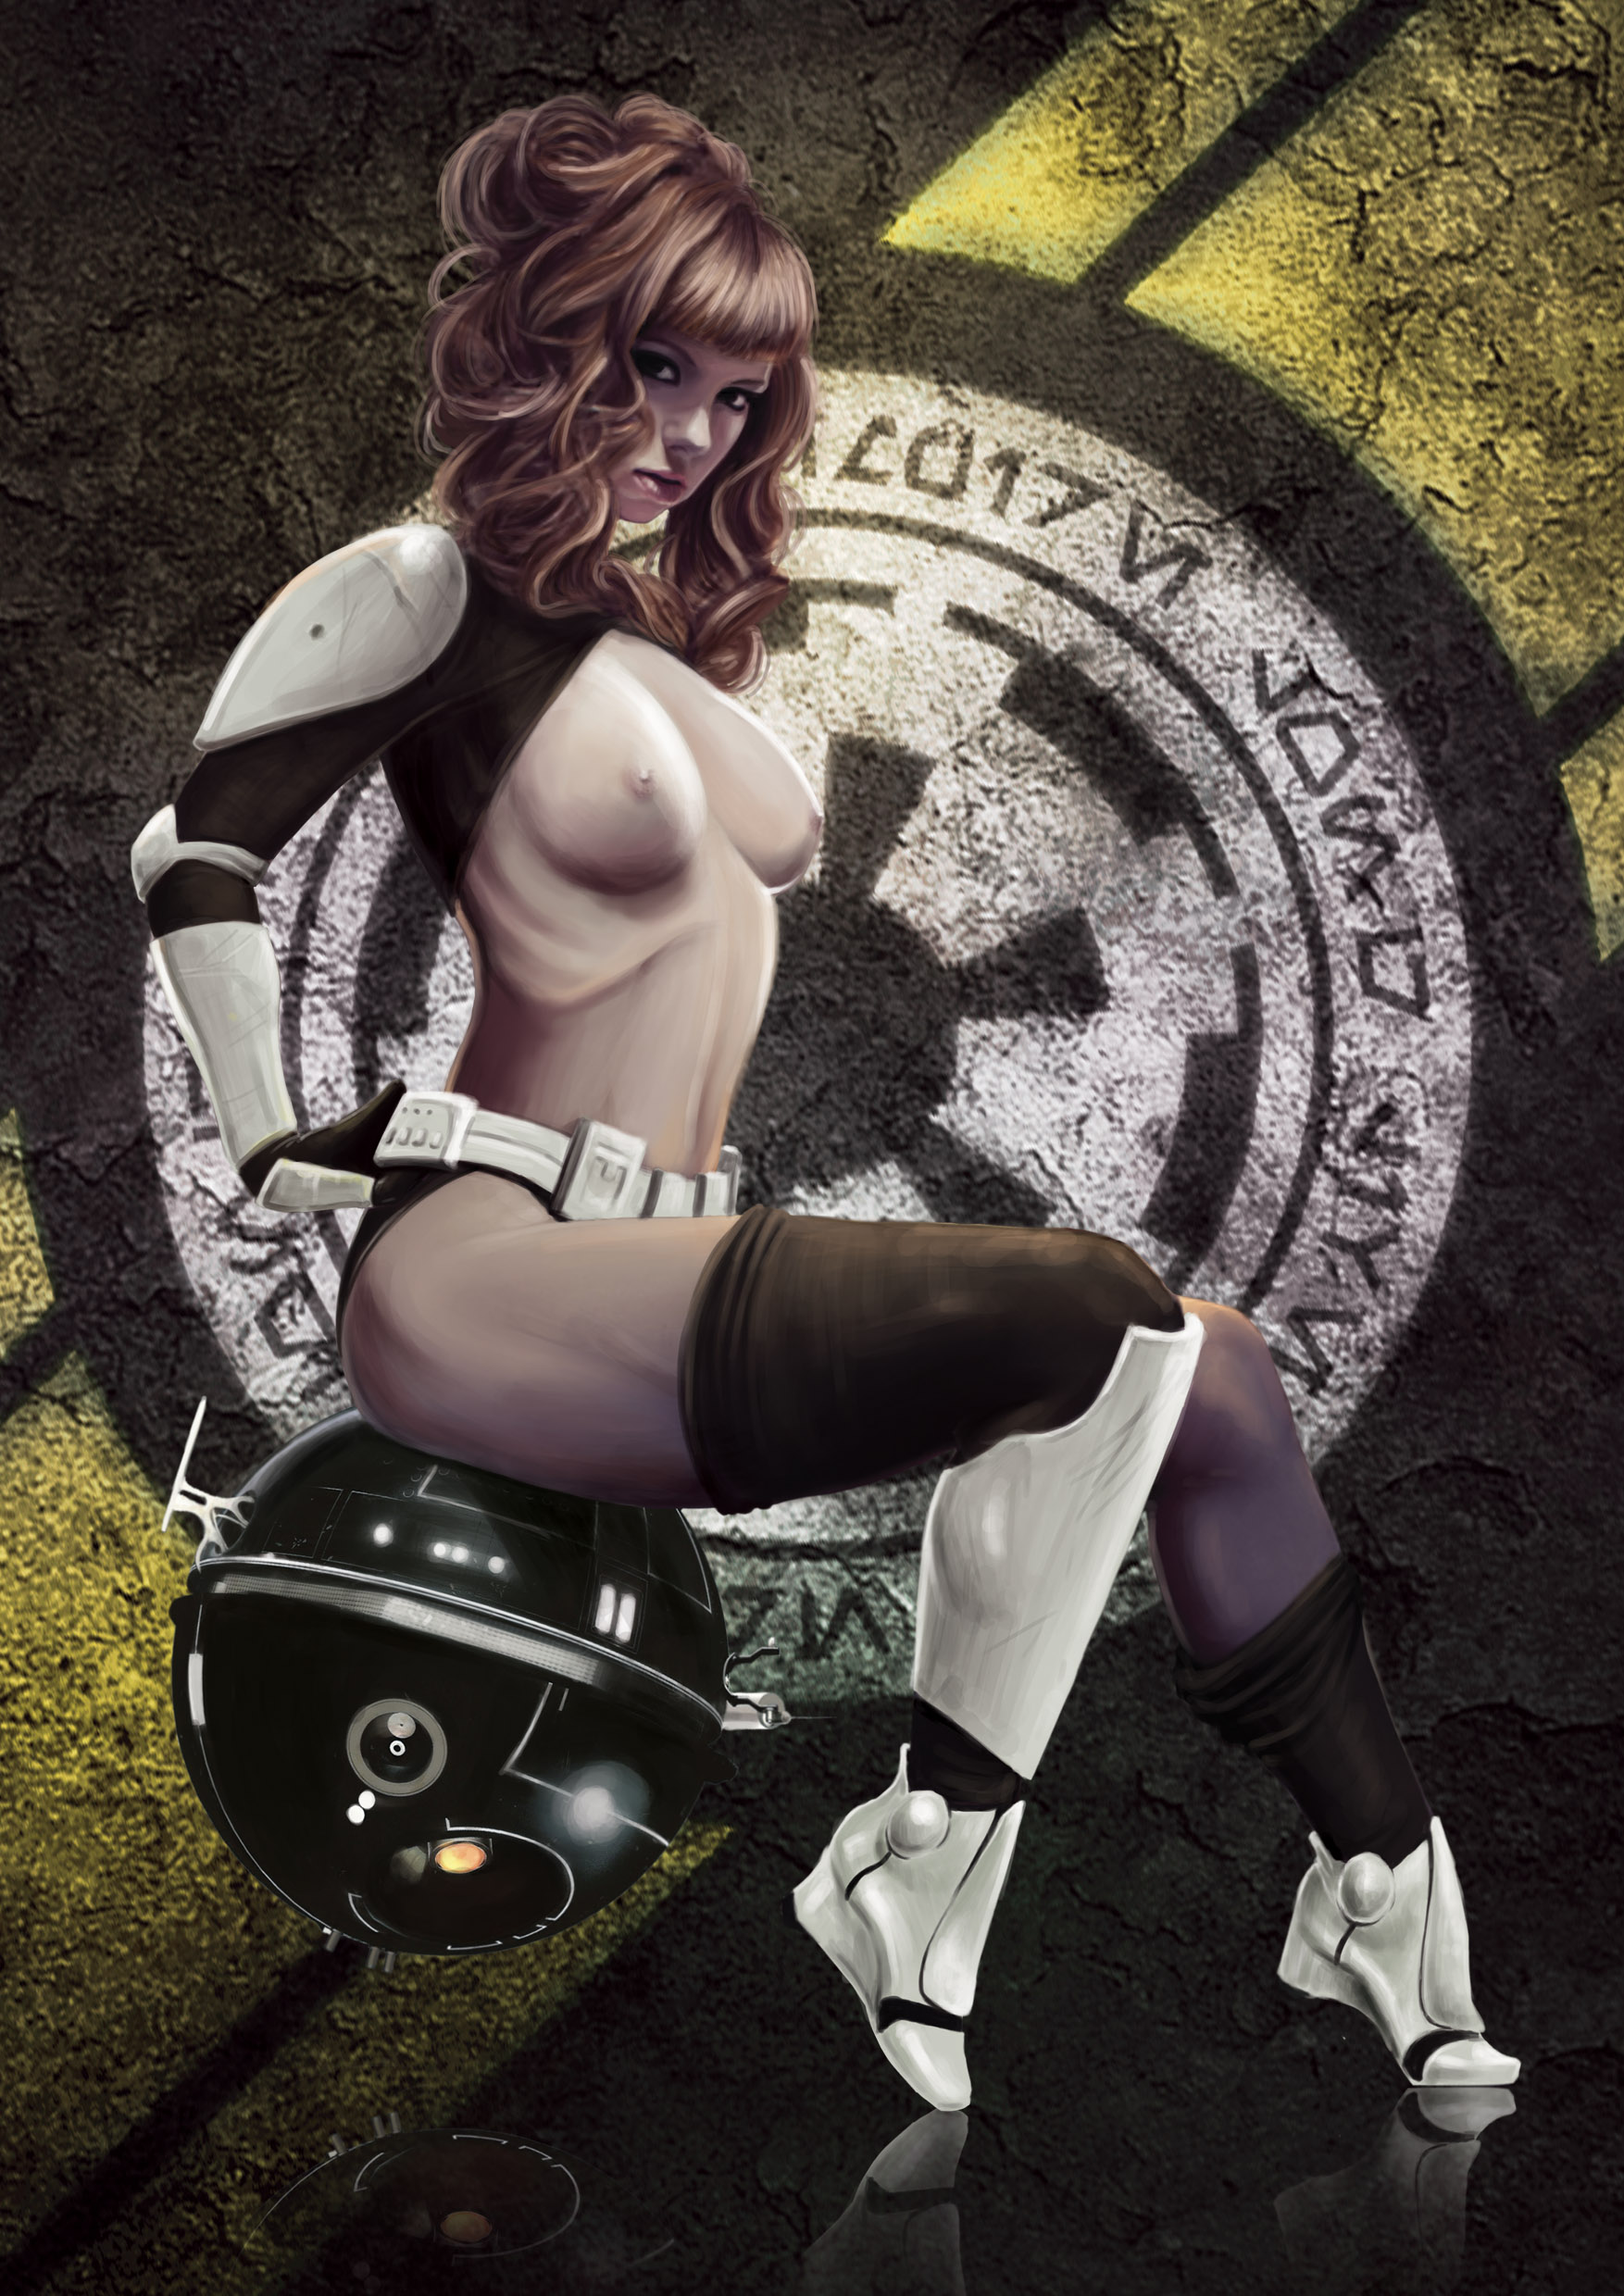 trooper porn storm trooper sexy stormtrooper girl nerd porn